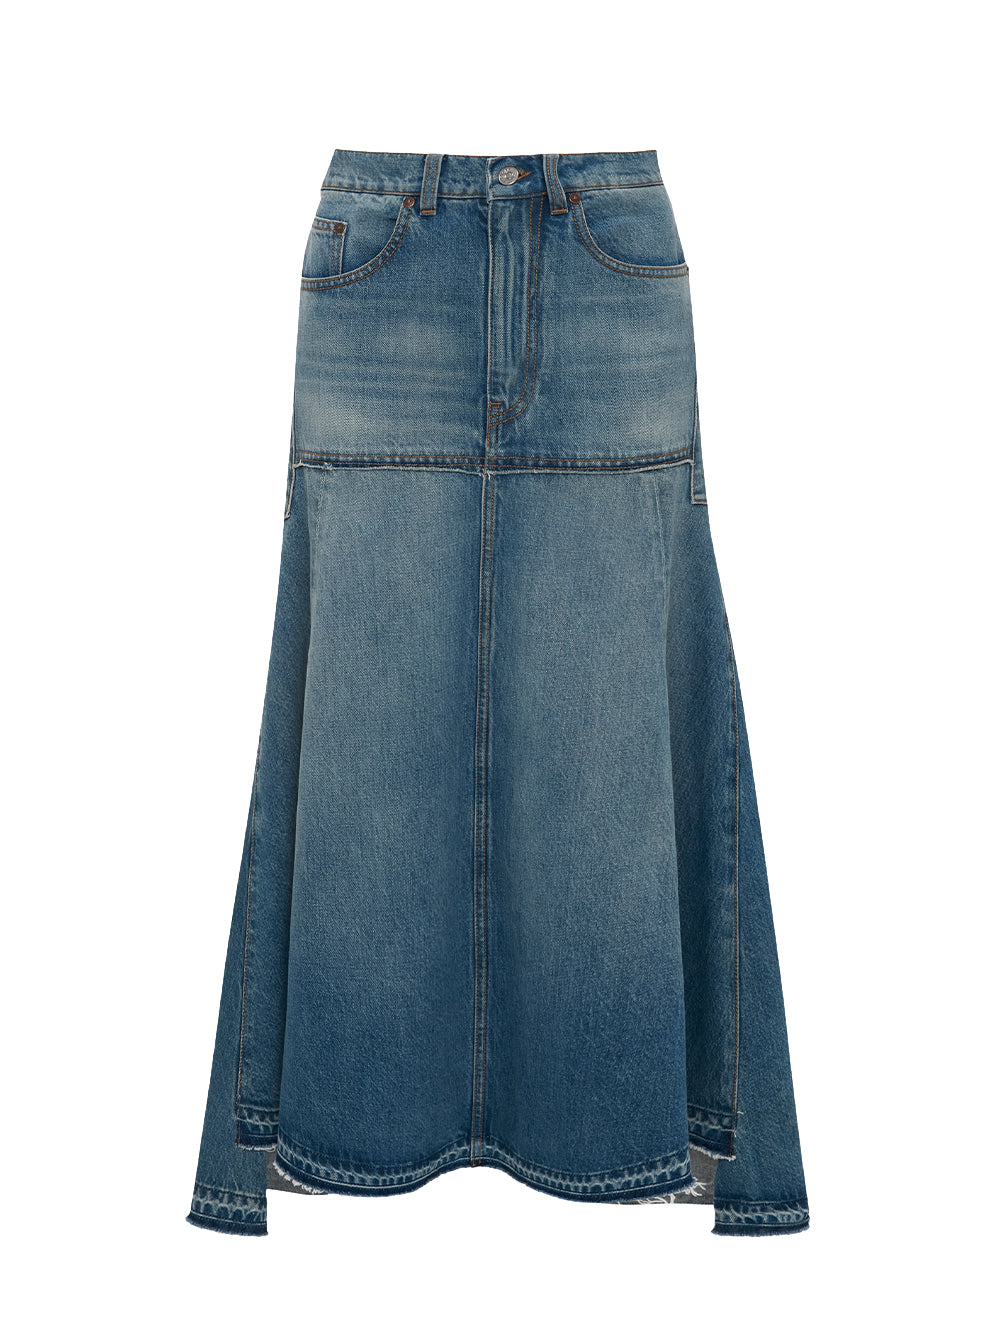 VICTORIA-BECKHAM-Patched-Denim-Skirt-Vintage-Wash